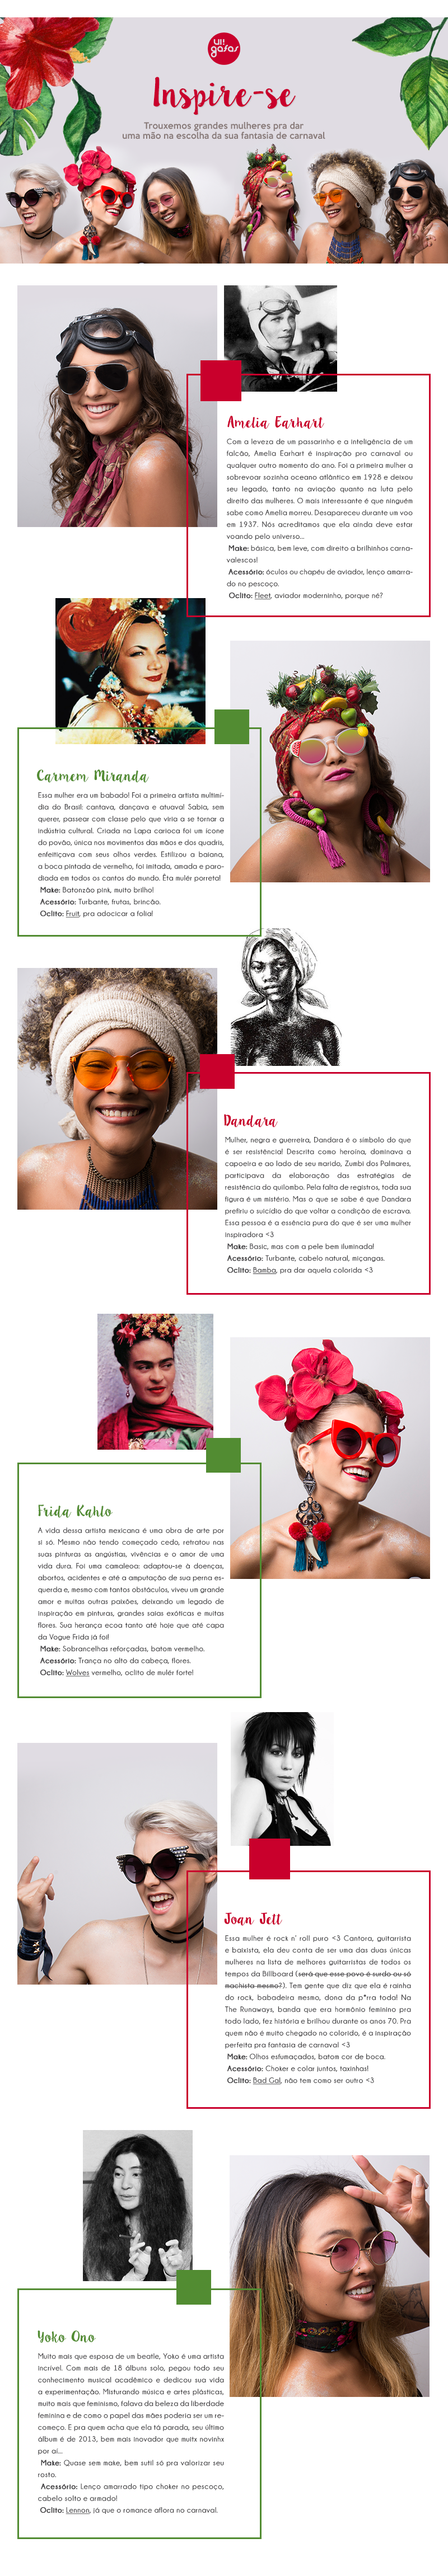 #CARNAUI &#8211; 6 mulheres poderosas pra você se inspirar nesse Carnaval!